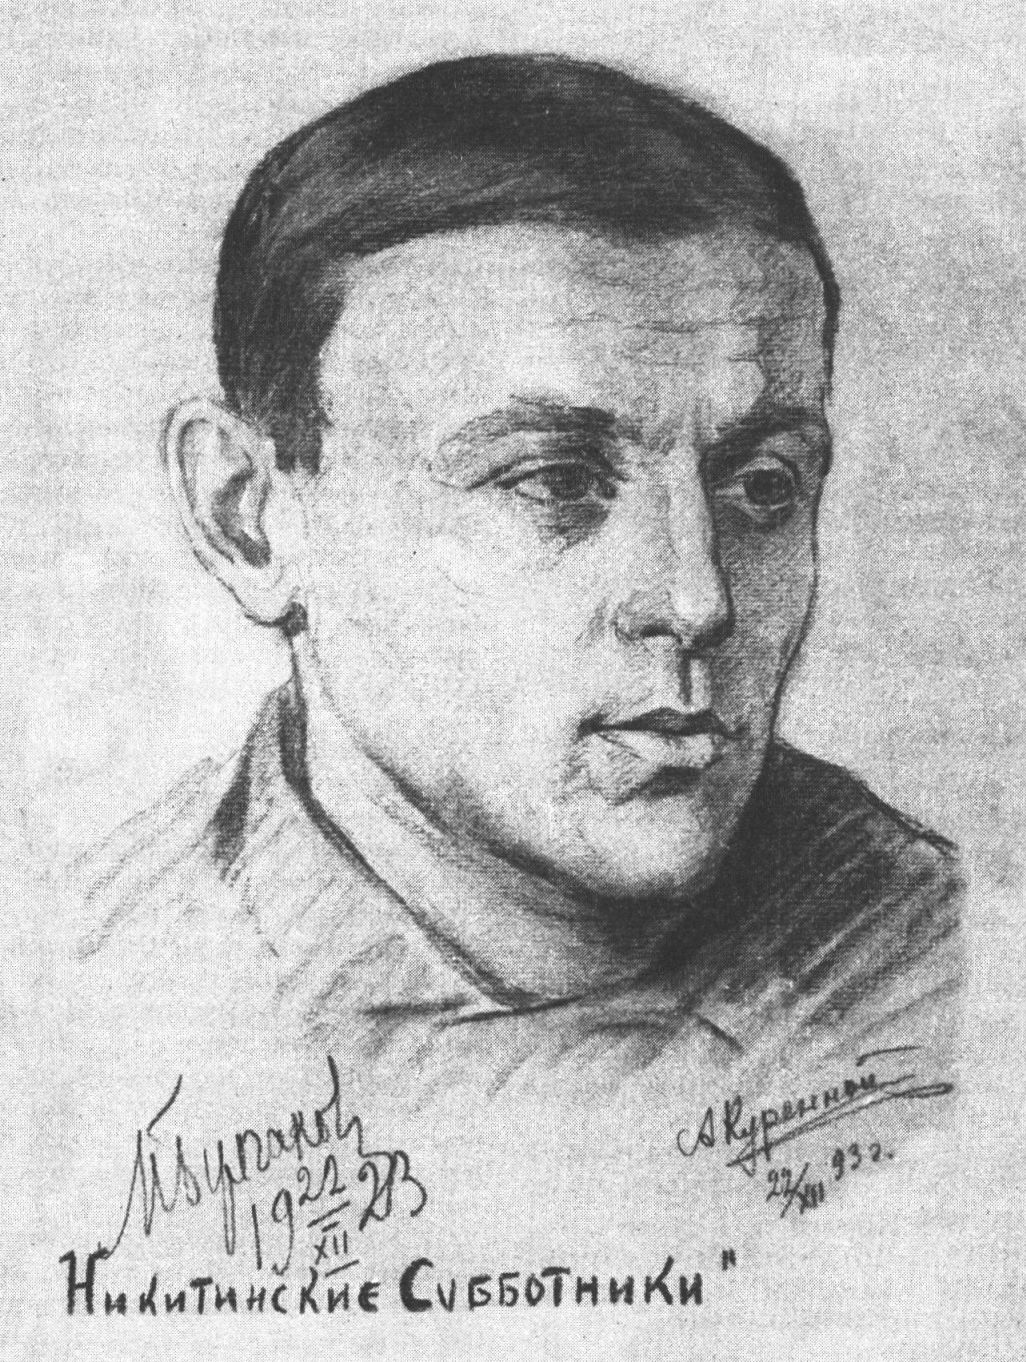 Портрет М.А. Булгакова, сделанный художником А. Куренным на заседании «Никитинских субботников». 22 декабря 1923 г.